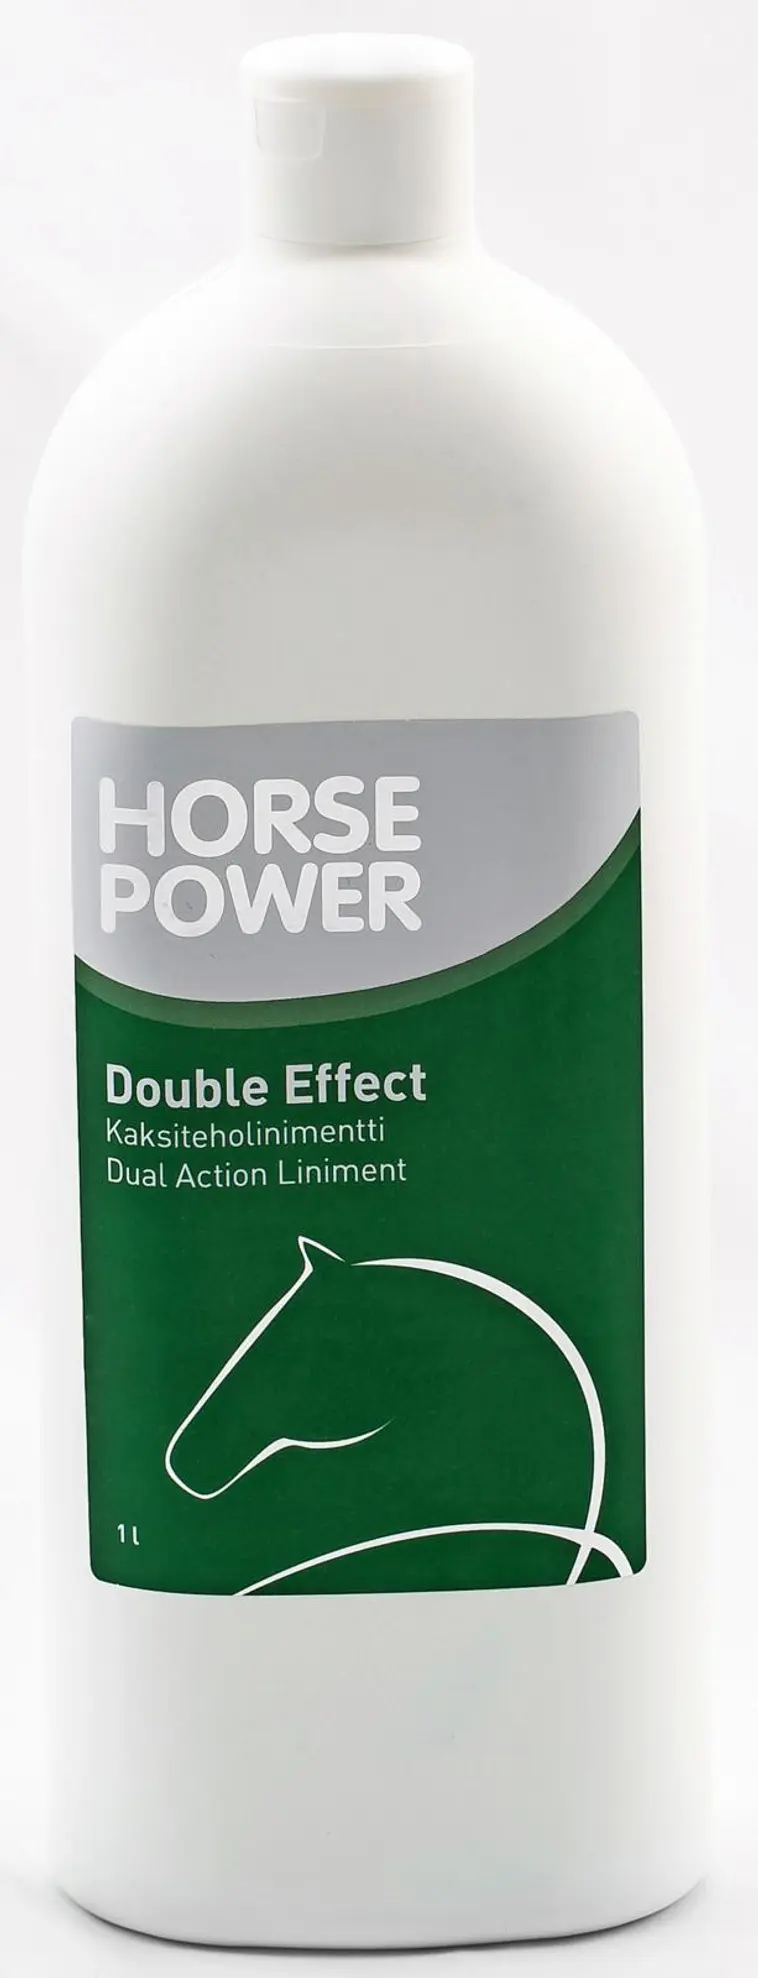 Horse Power kaksiteholinimentti 1l